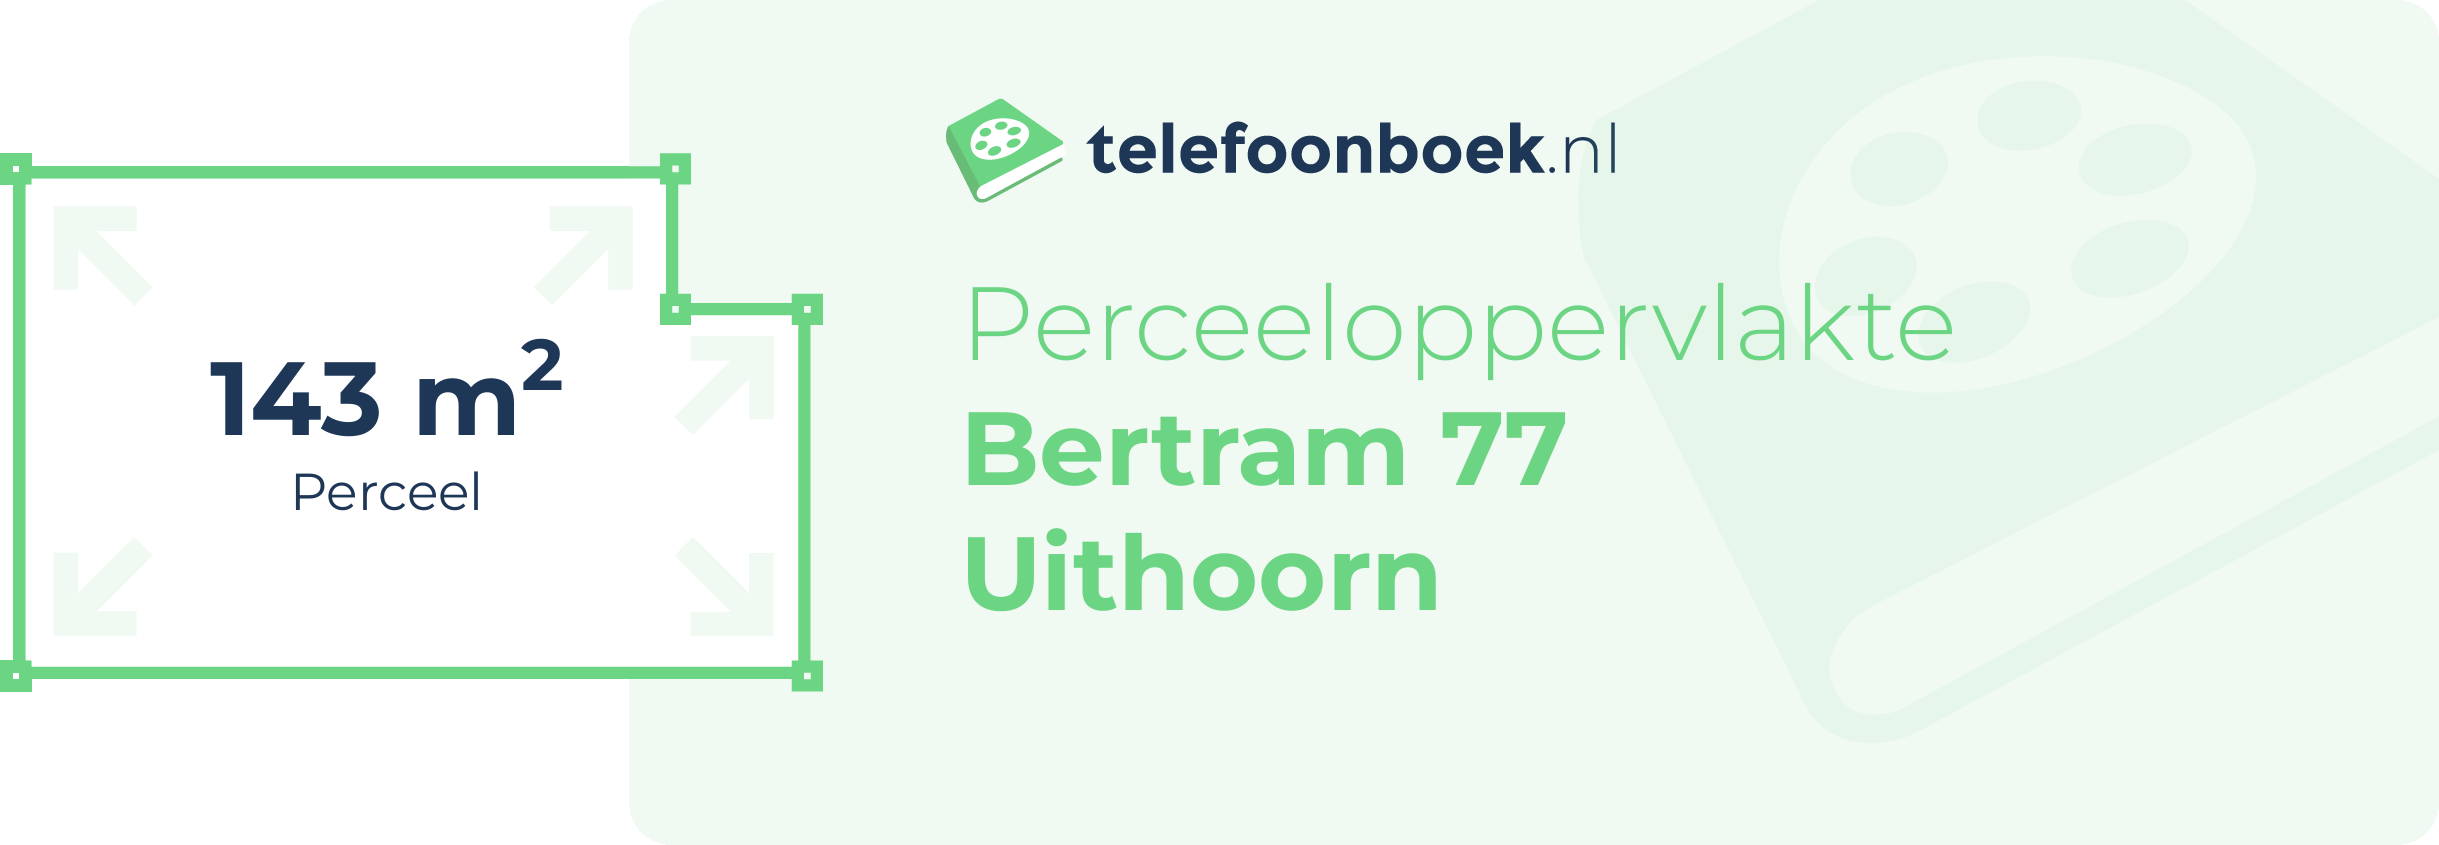 Perceeloppervlakte Bertram 77 Uithoorn